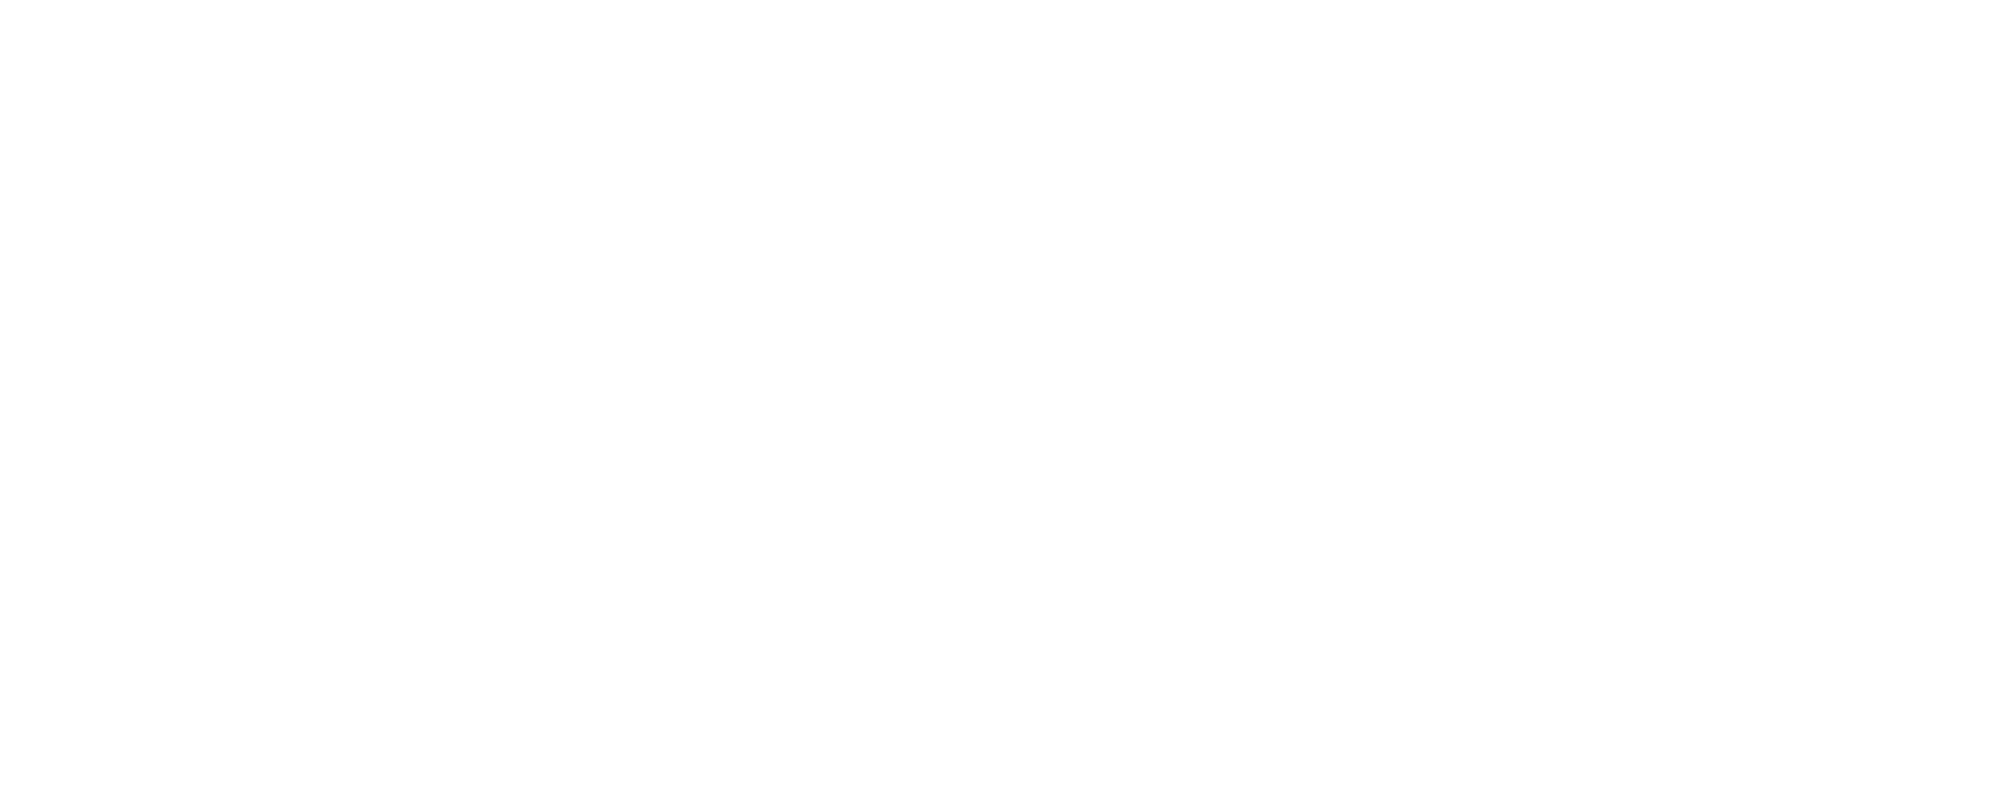 cics logo